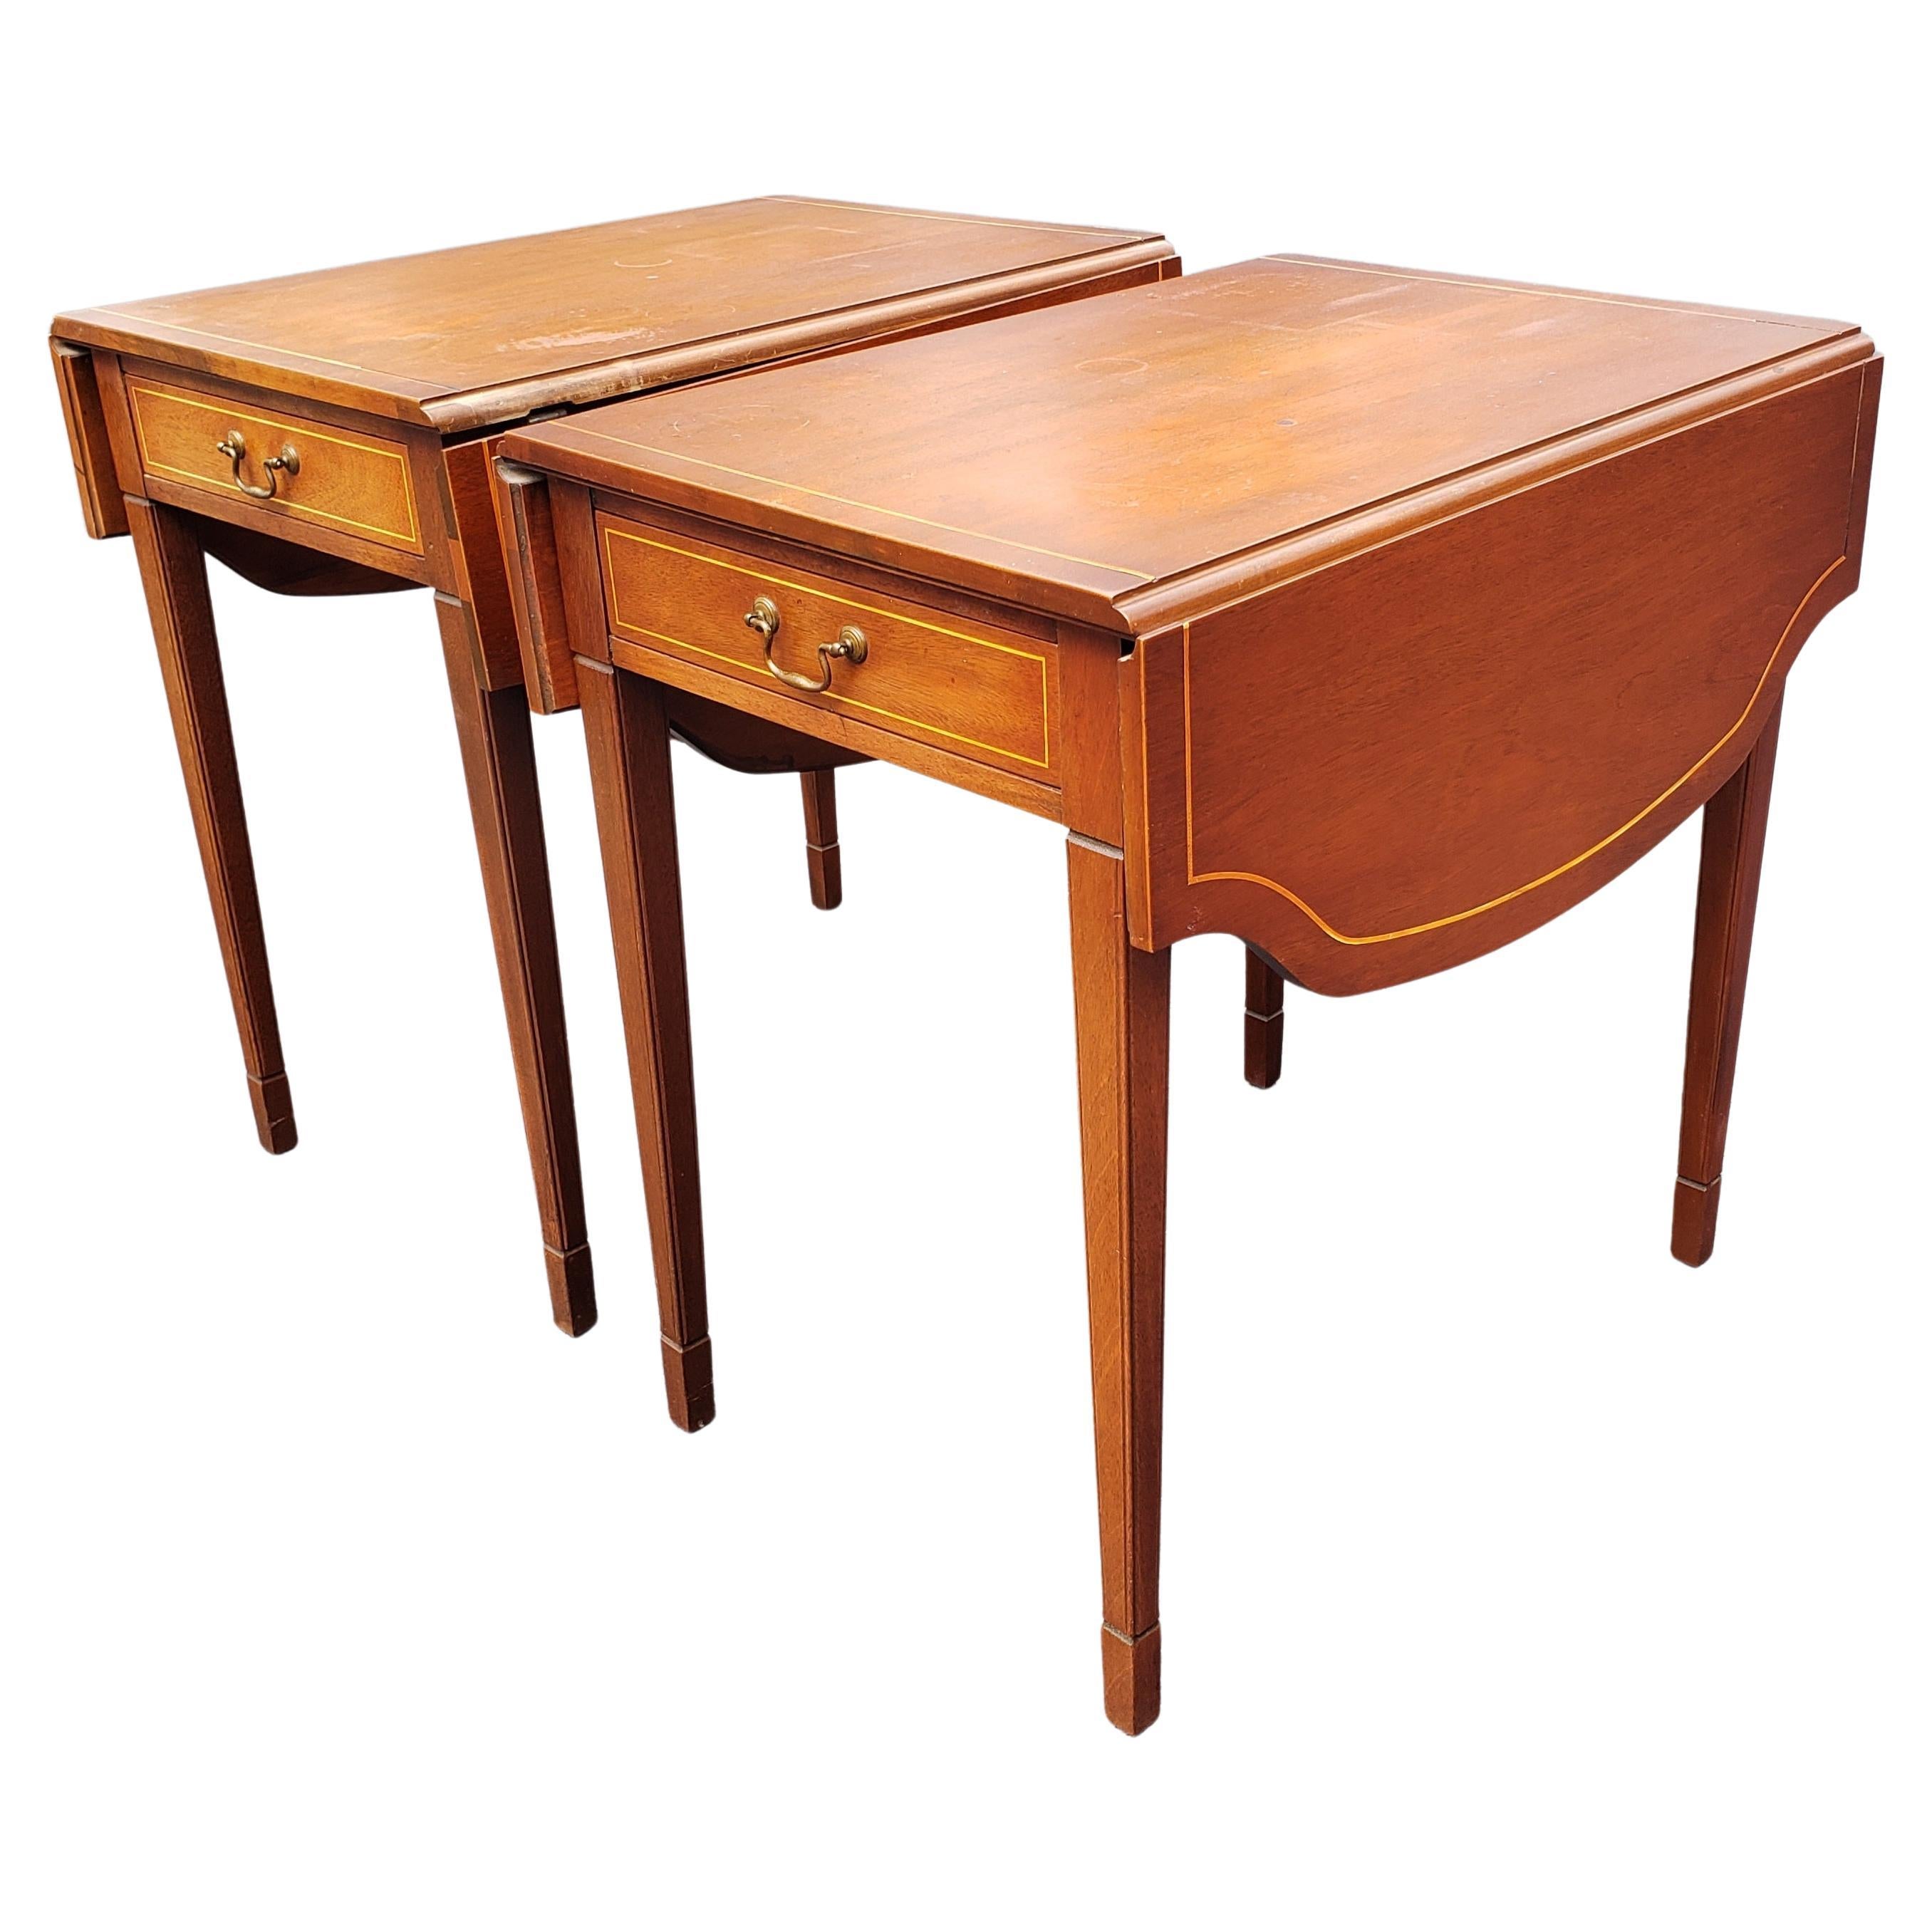 Magnifique paire de tables à abattant Pembroke en acajou véritable certifié Brandt Furniture des années 1940. En bon état vintage. 
Un tiroir fonctionnel. La table semble avoir été remise à neuf à un moment donné. Une certaine usure correspondant à